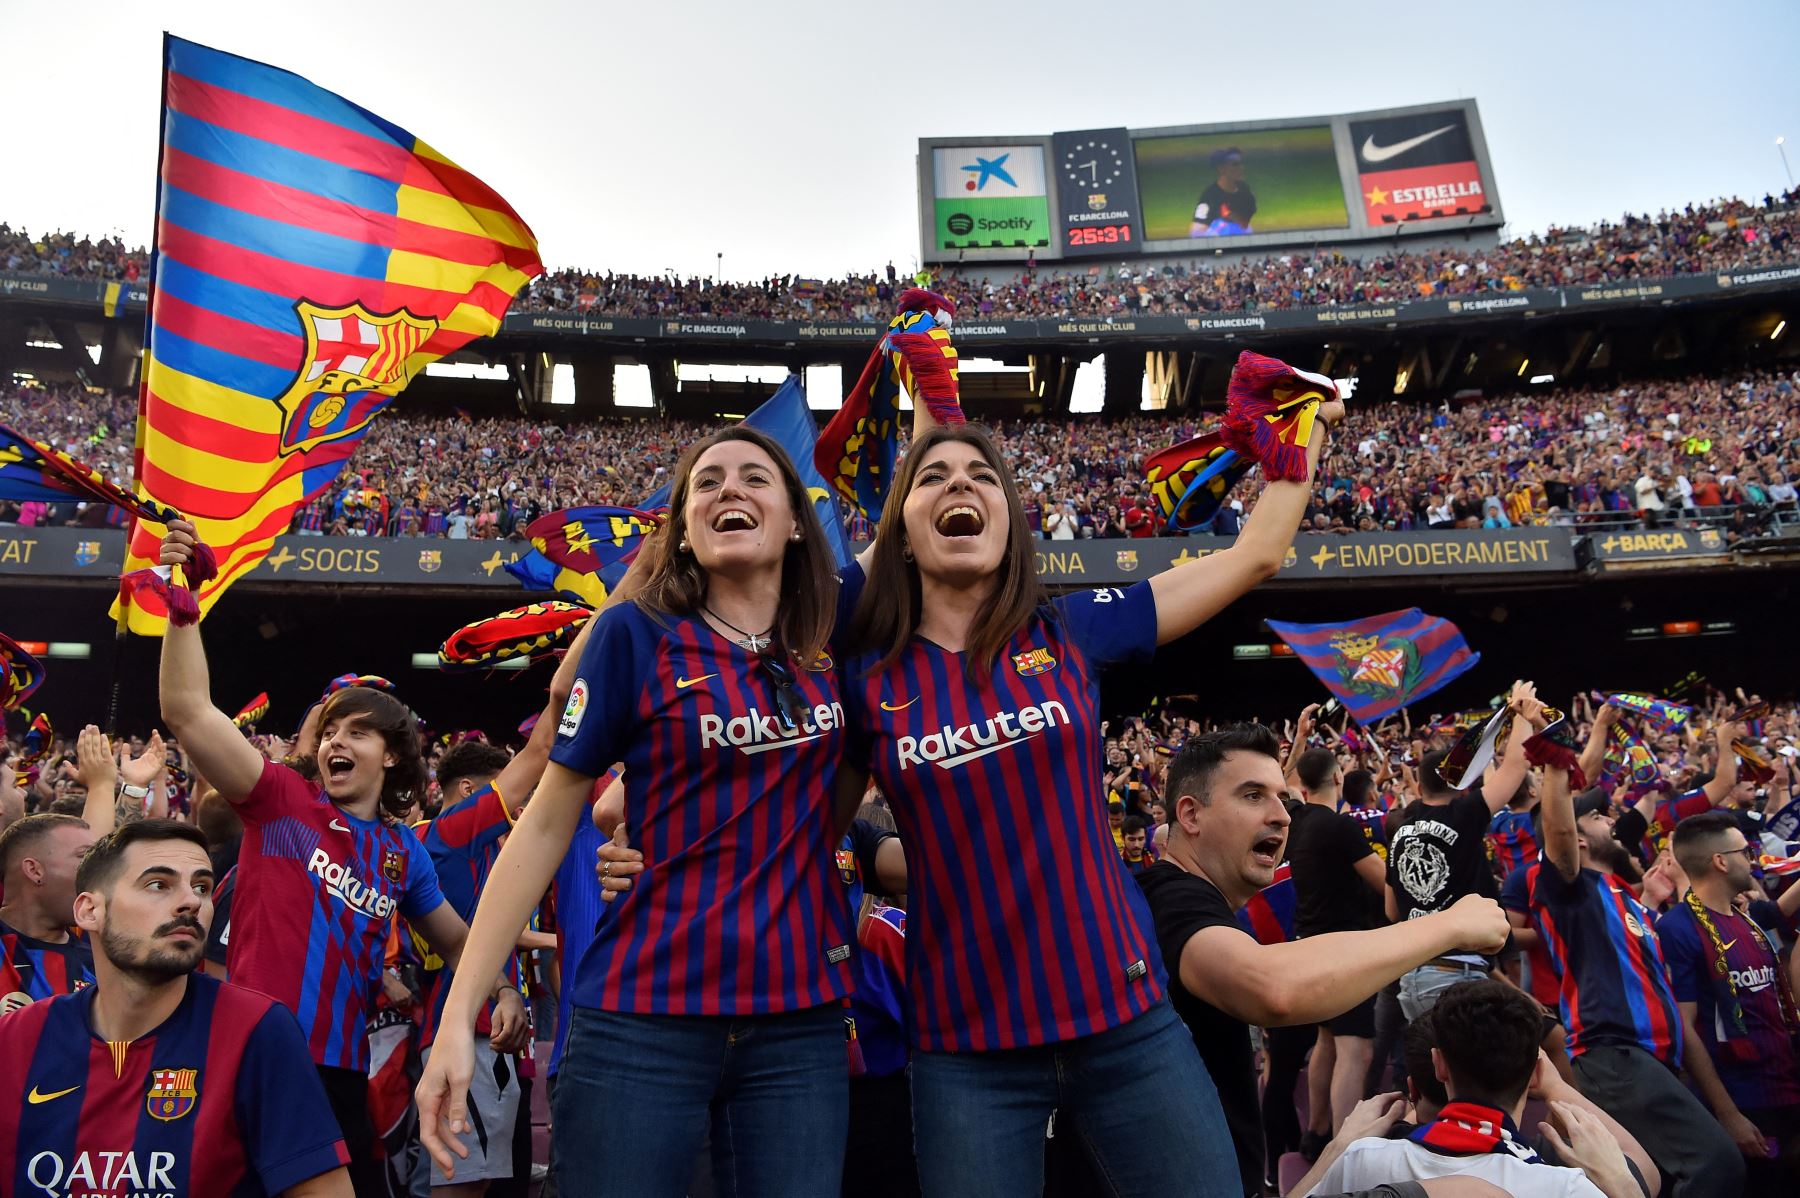 La afición celebra durante el partido de fútbol de la liga española entre el FC Barcelona y el RCD Mallorca, el último partido que se celebra en el estadio del Camp Nou antes del inicio de las obras de construcción del nuevo estadio del Camp Nou de Barcelona. Foto:ANDINA/AFP